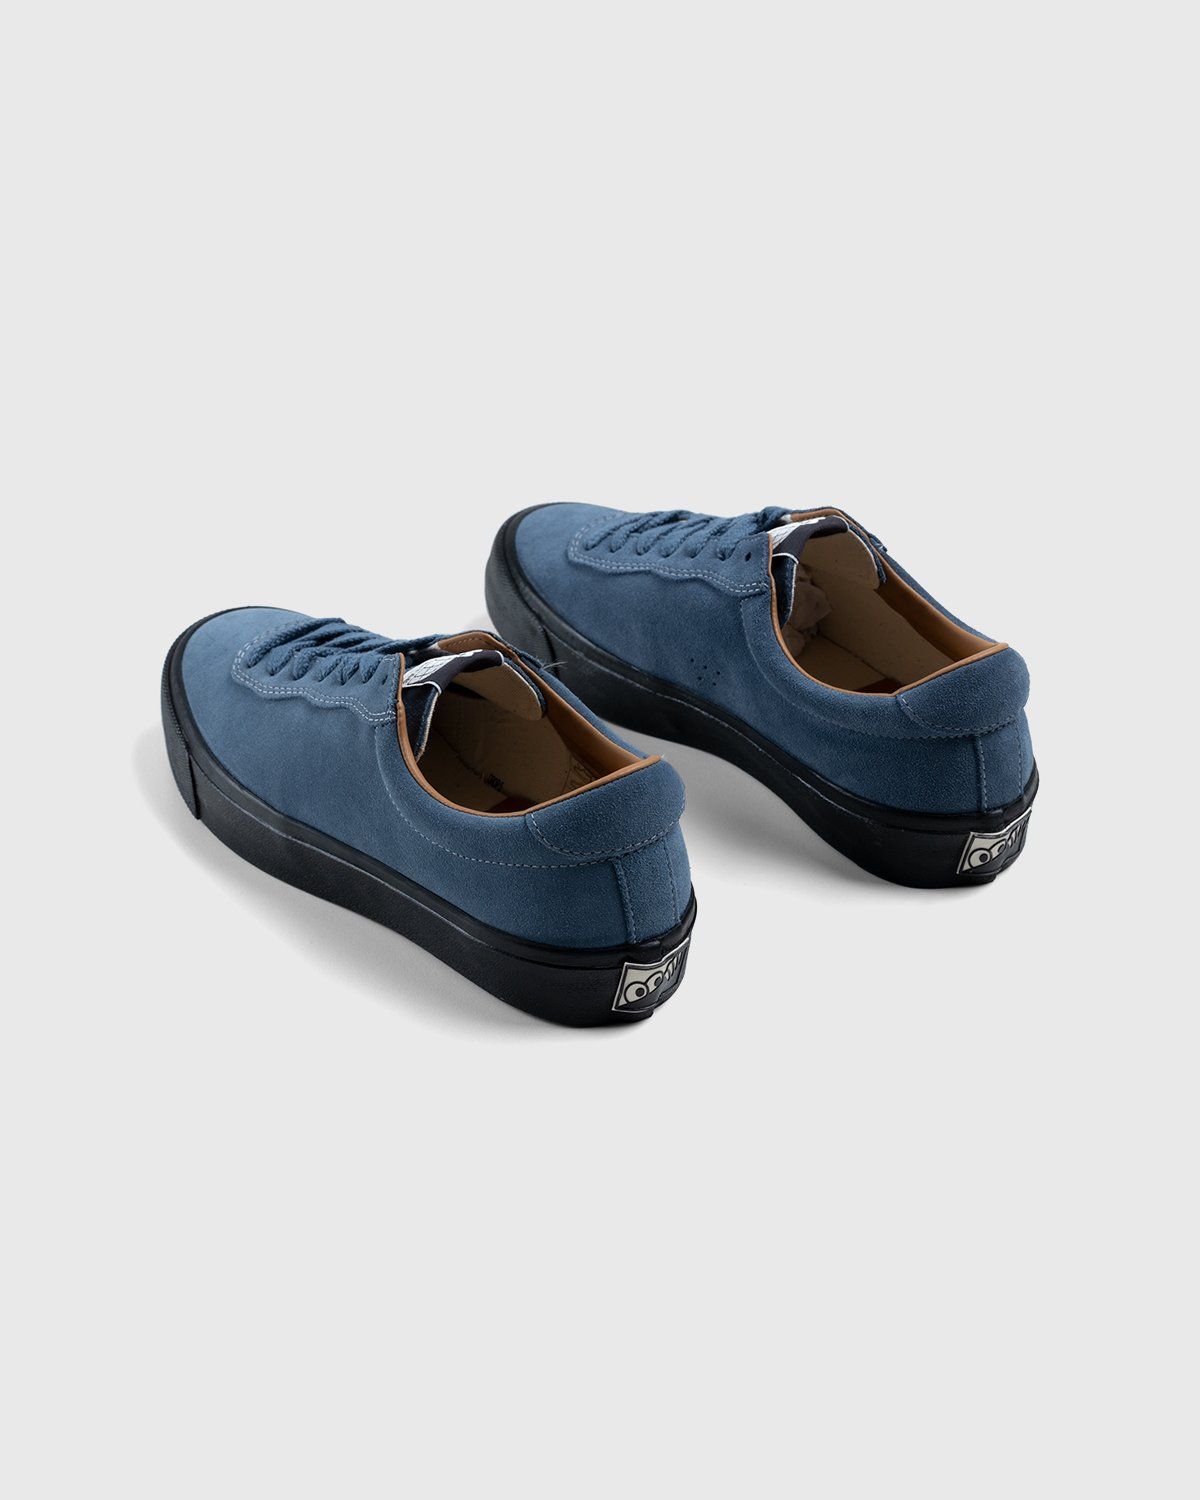 Last Resort AB – VM001 Suede Lo Blue/Black - Sneakers - Blue - Image 4